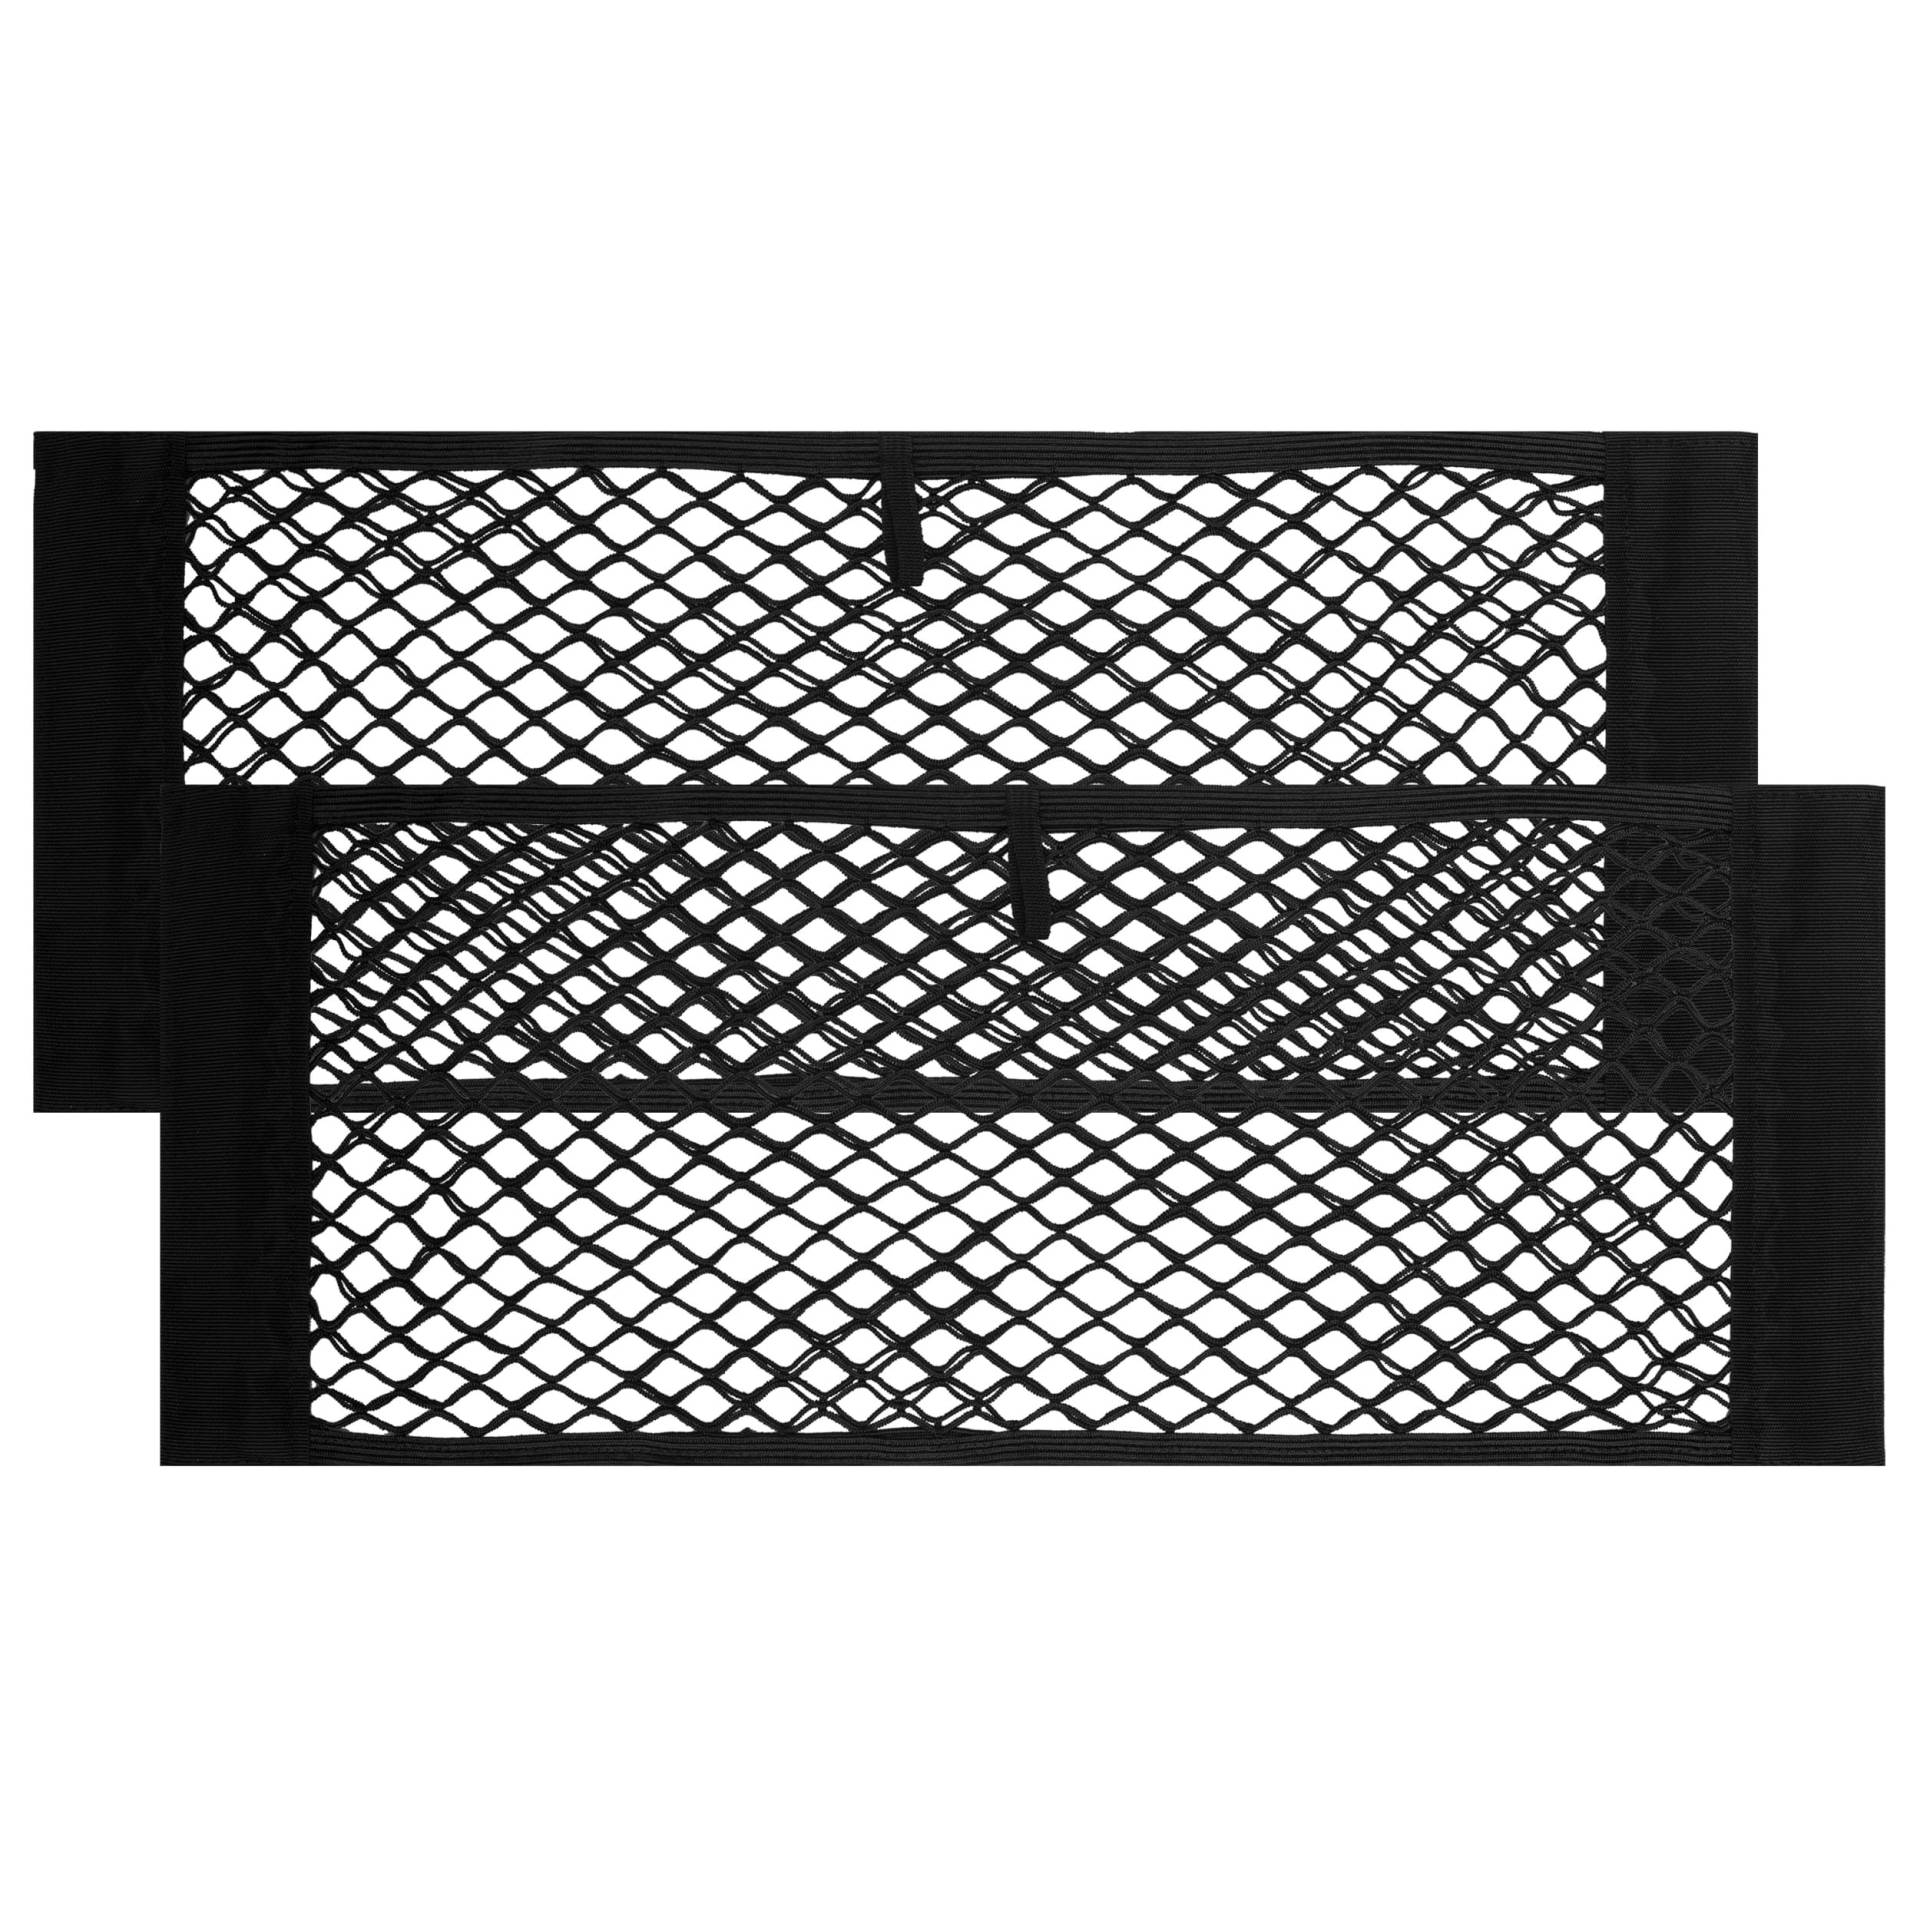 Vicera Kofferraum Netztasche mit Klett • Organizer Netz fürs Auto/SUV zum Aufbewahren & Verstauen • 60x25 cm 2er Set von Vicera